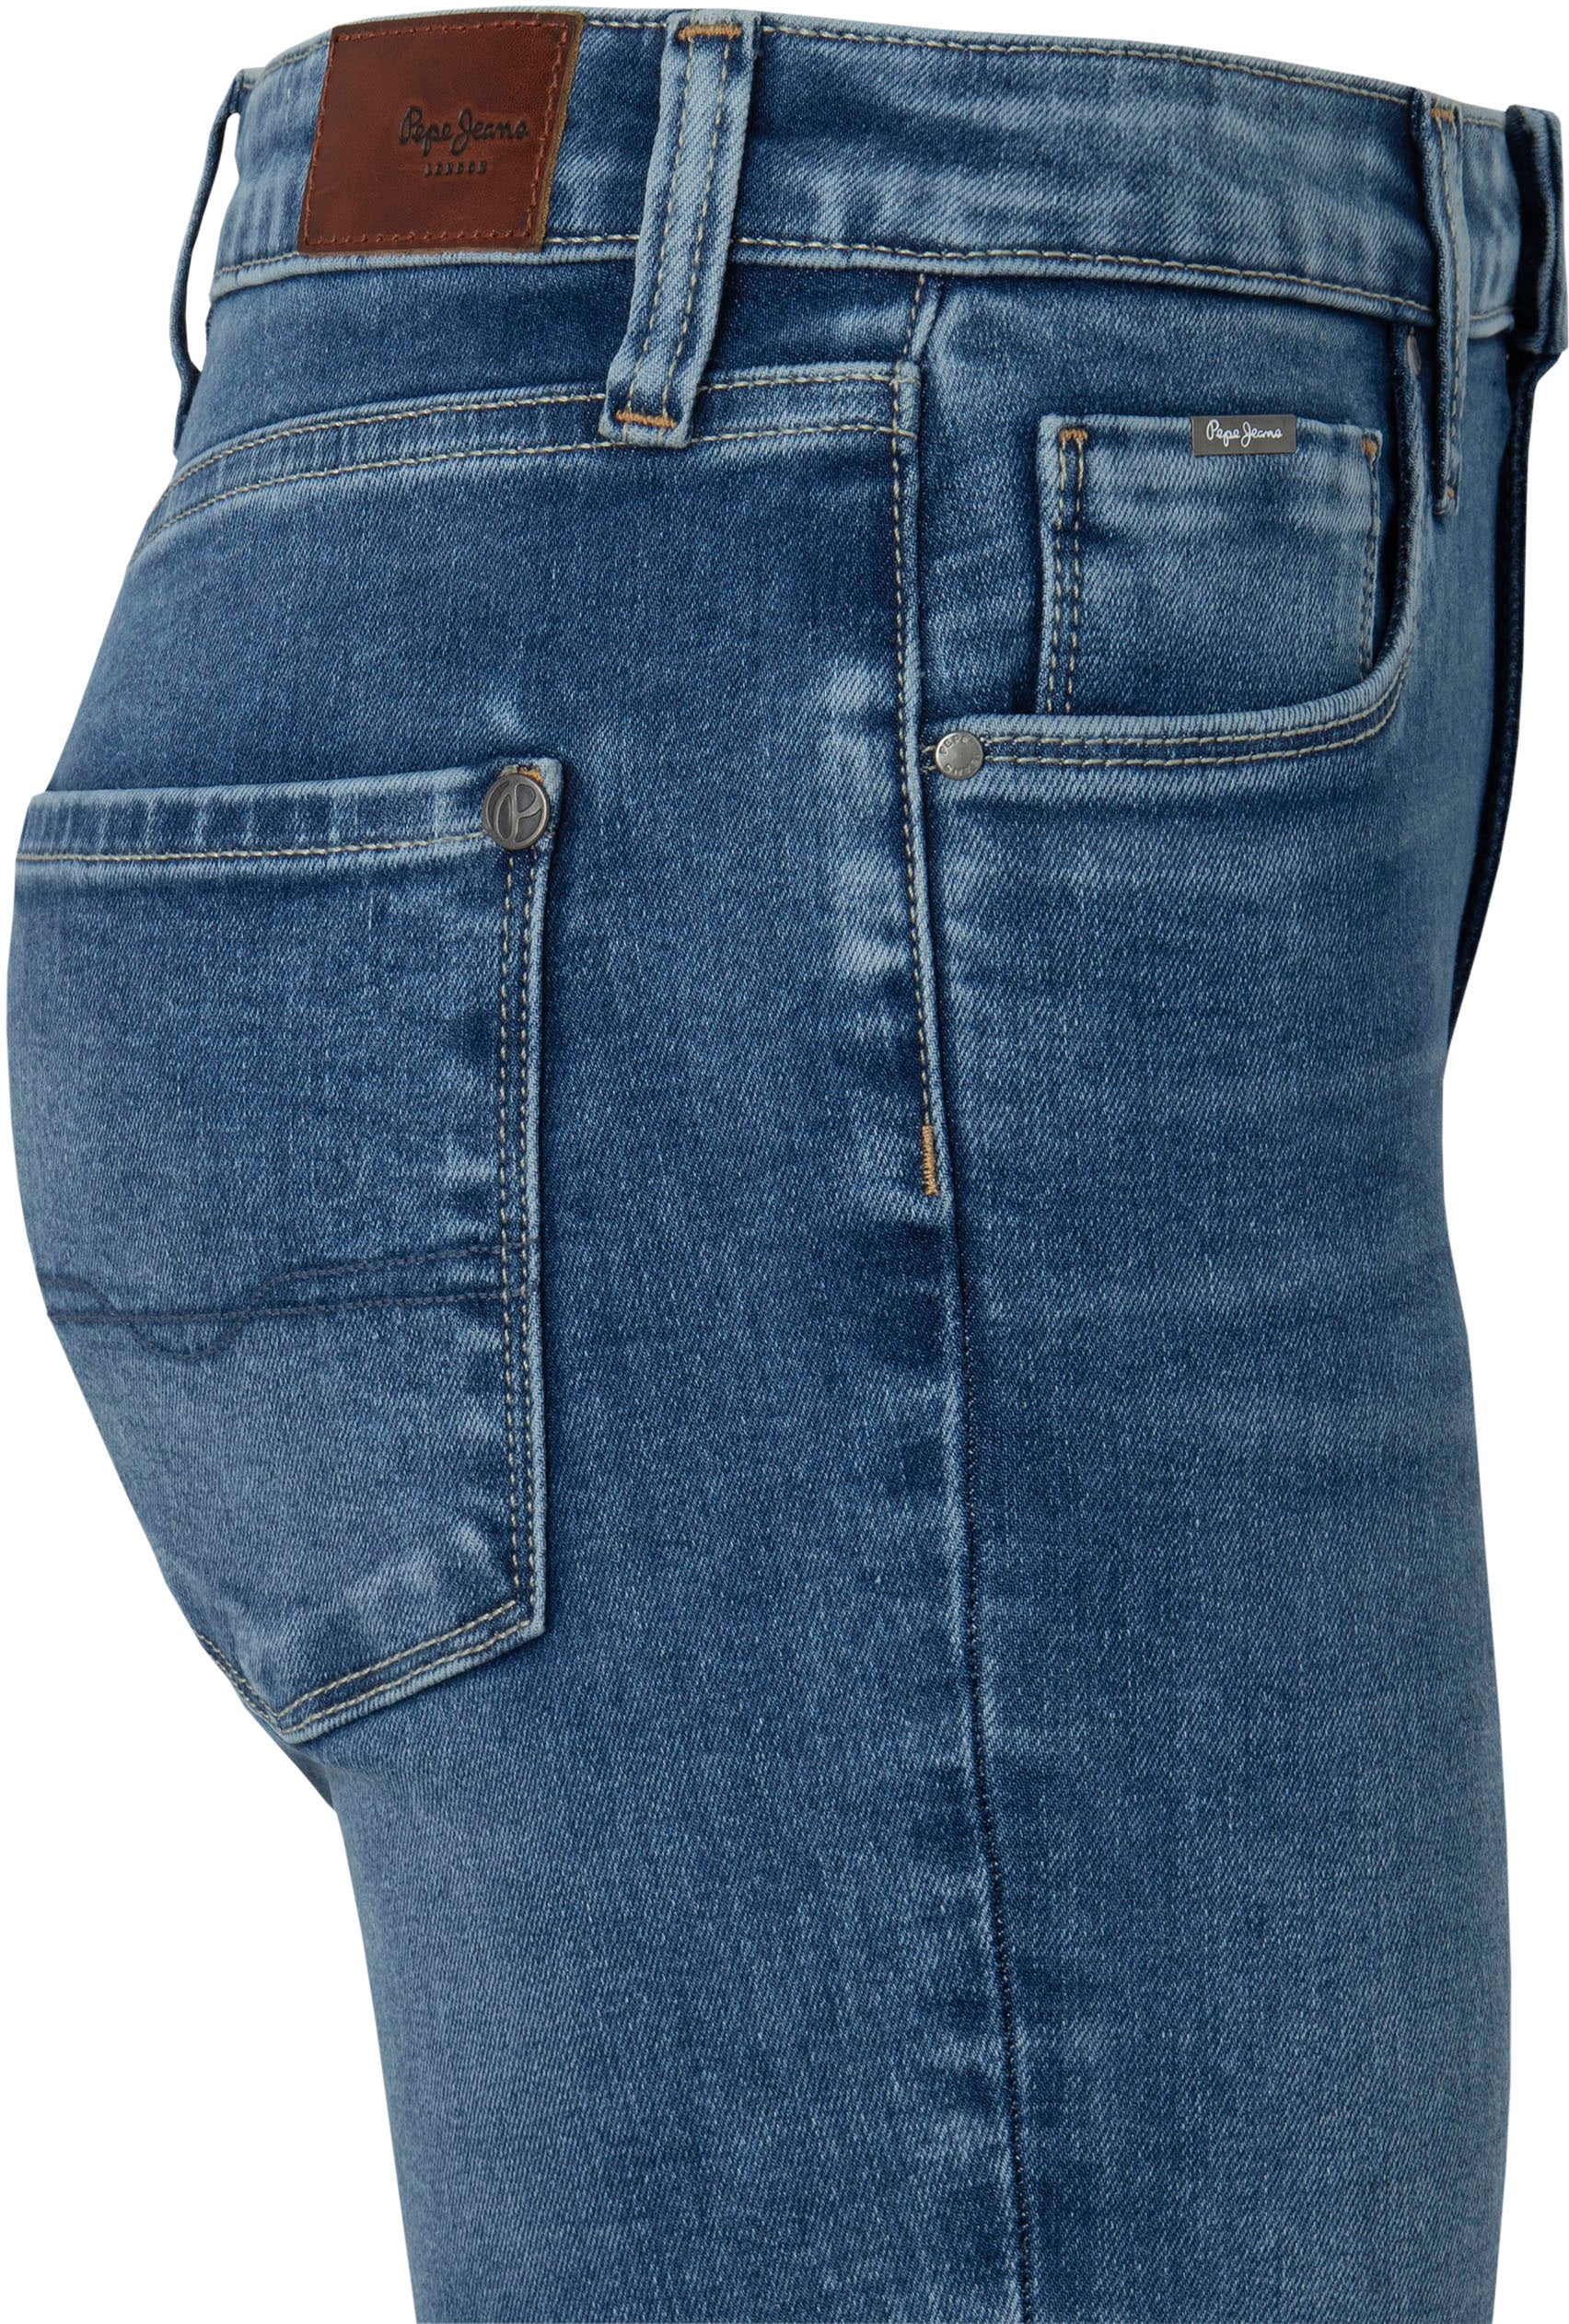 Pepe Jeans bequemem mit hohem Shop kaufen seidig OTTO in Bund Online Skinny Stretch im Röhrenjeans Passform aus Denim »REGENT«